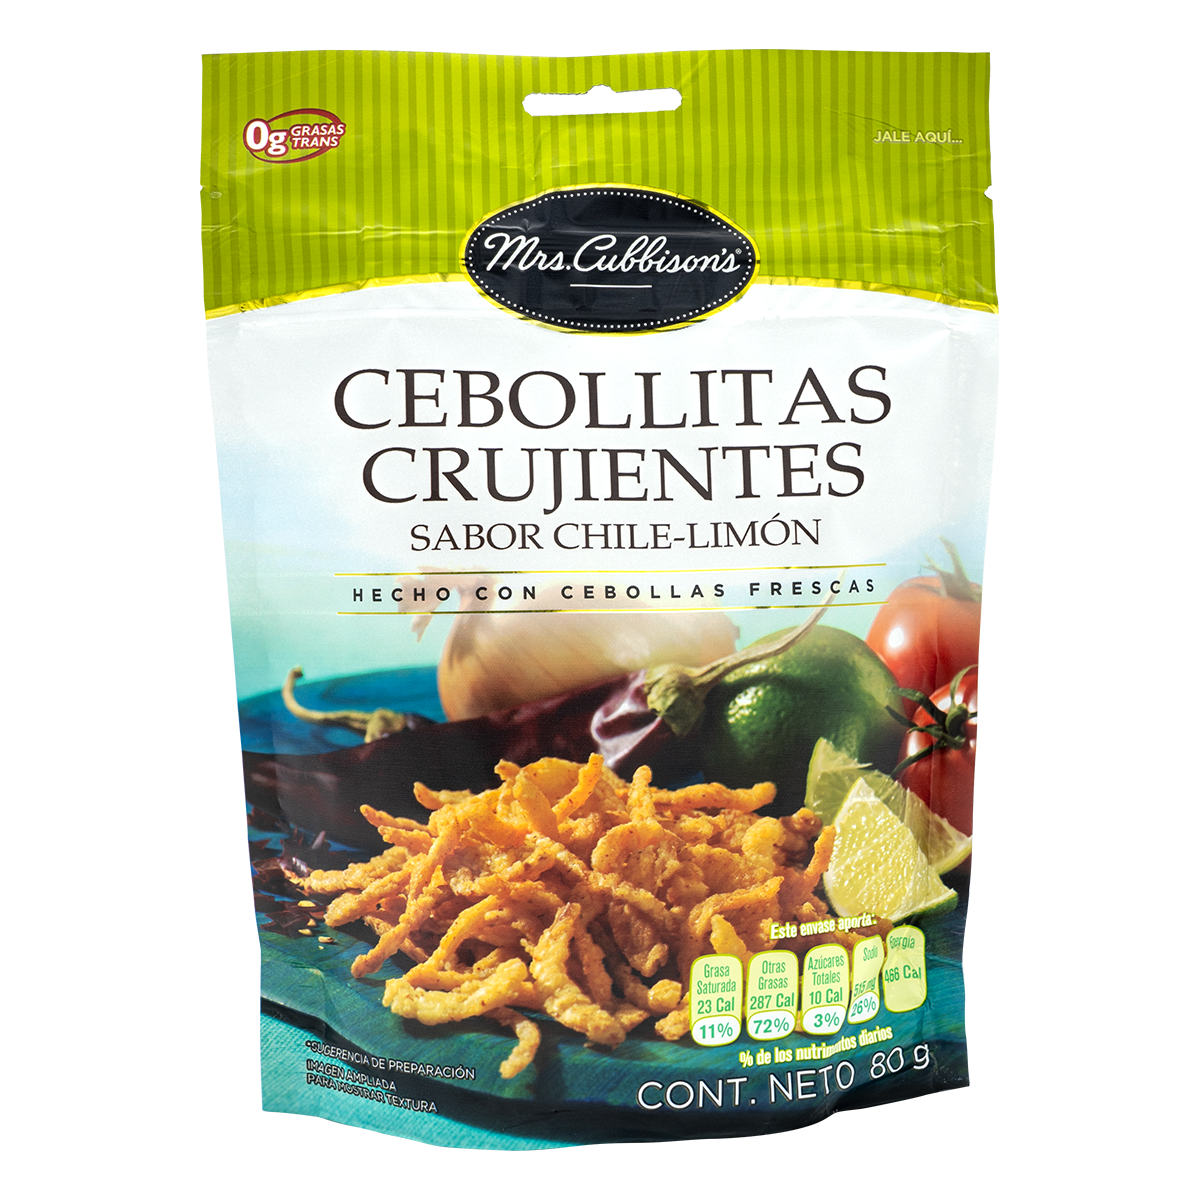 Mrs. Cubison's - Cebollitas Crujientes sabor Chile-Limón - Reinventa tus platillos-cebollas-chile-limón